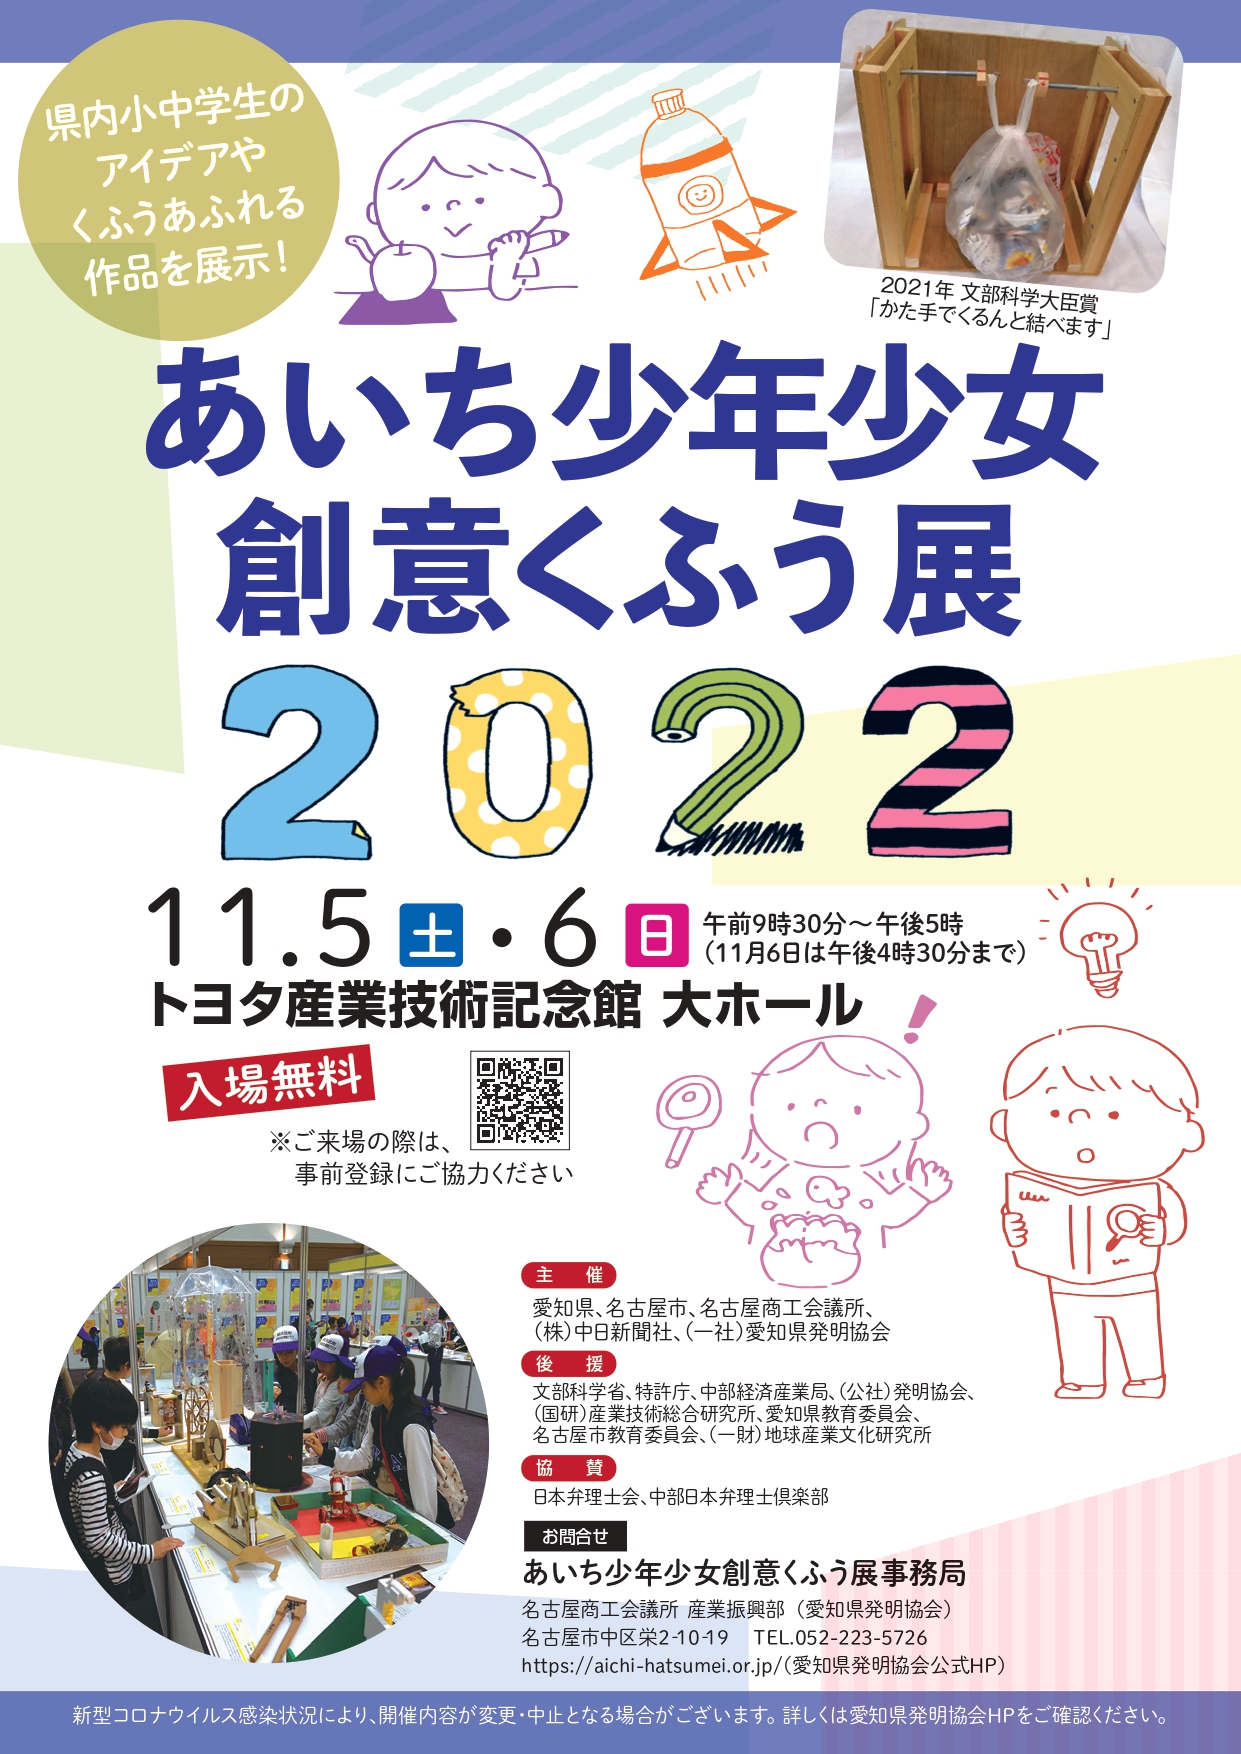 あいち少年少女創意くふう展2022」の開催について | 北名古屋市少年